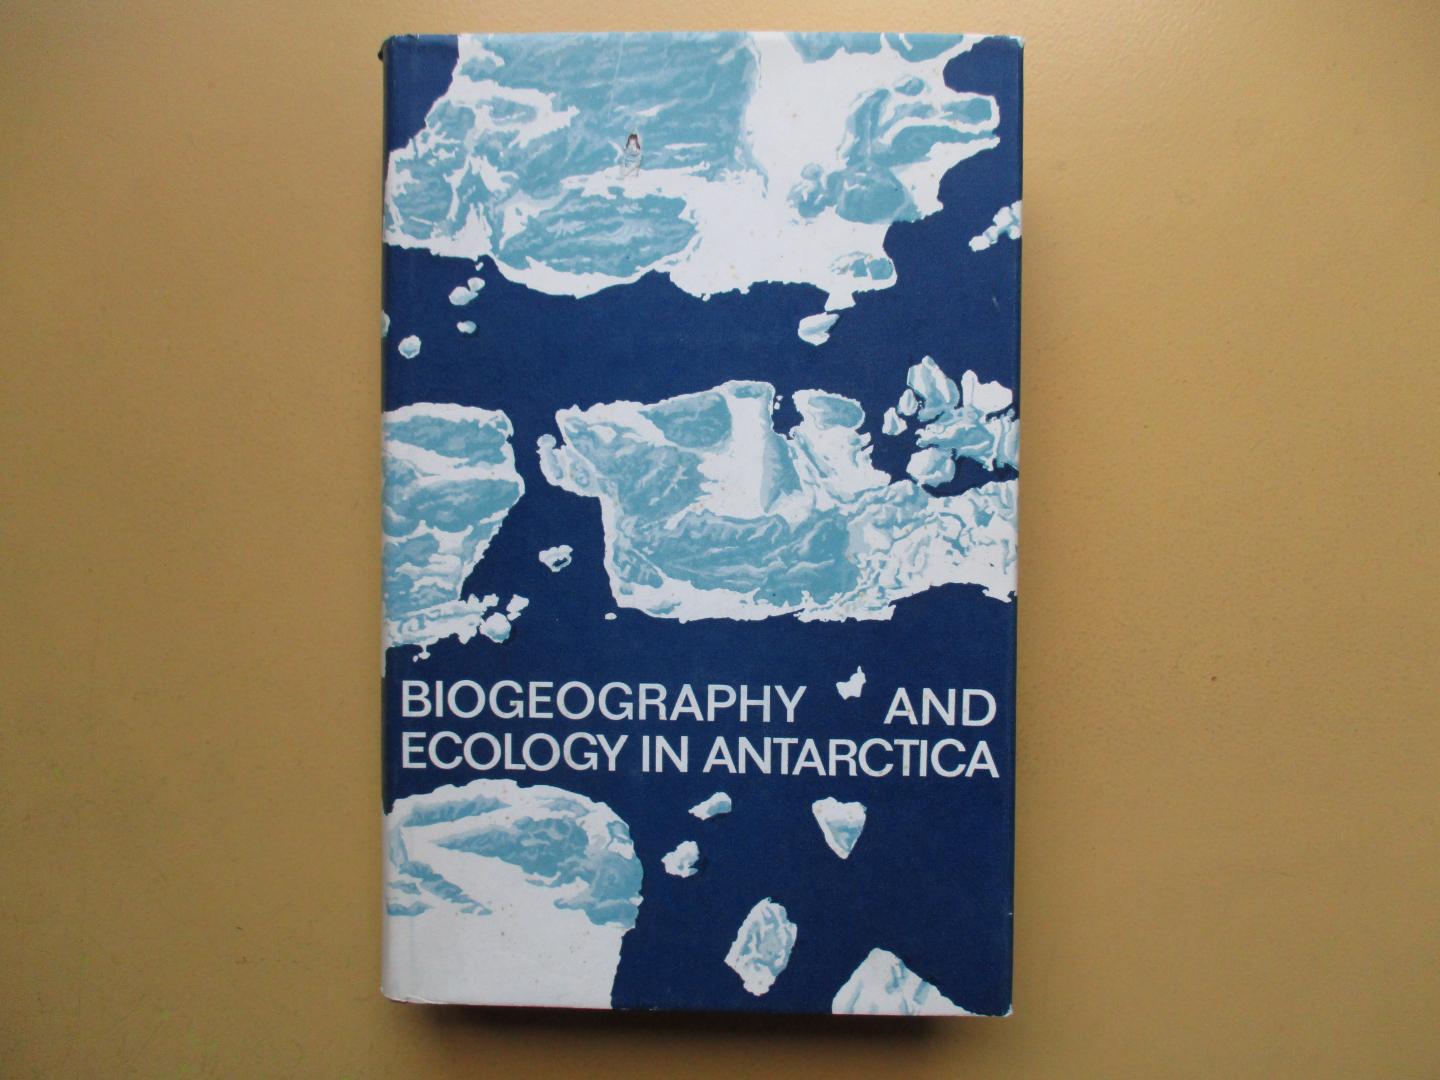 Mieghem, J. van / P. van Oye - Biogeography and ecology in Antarctica